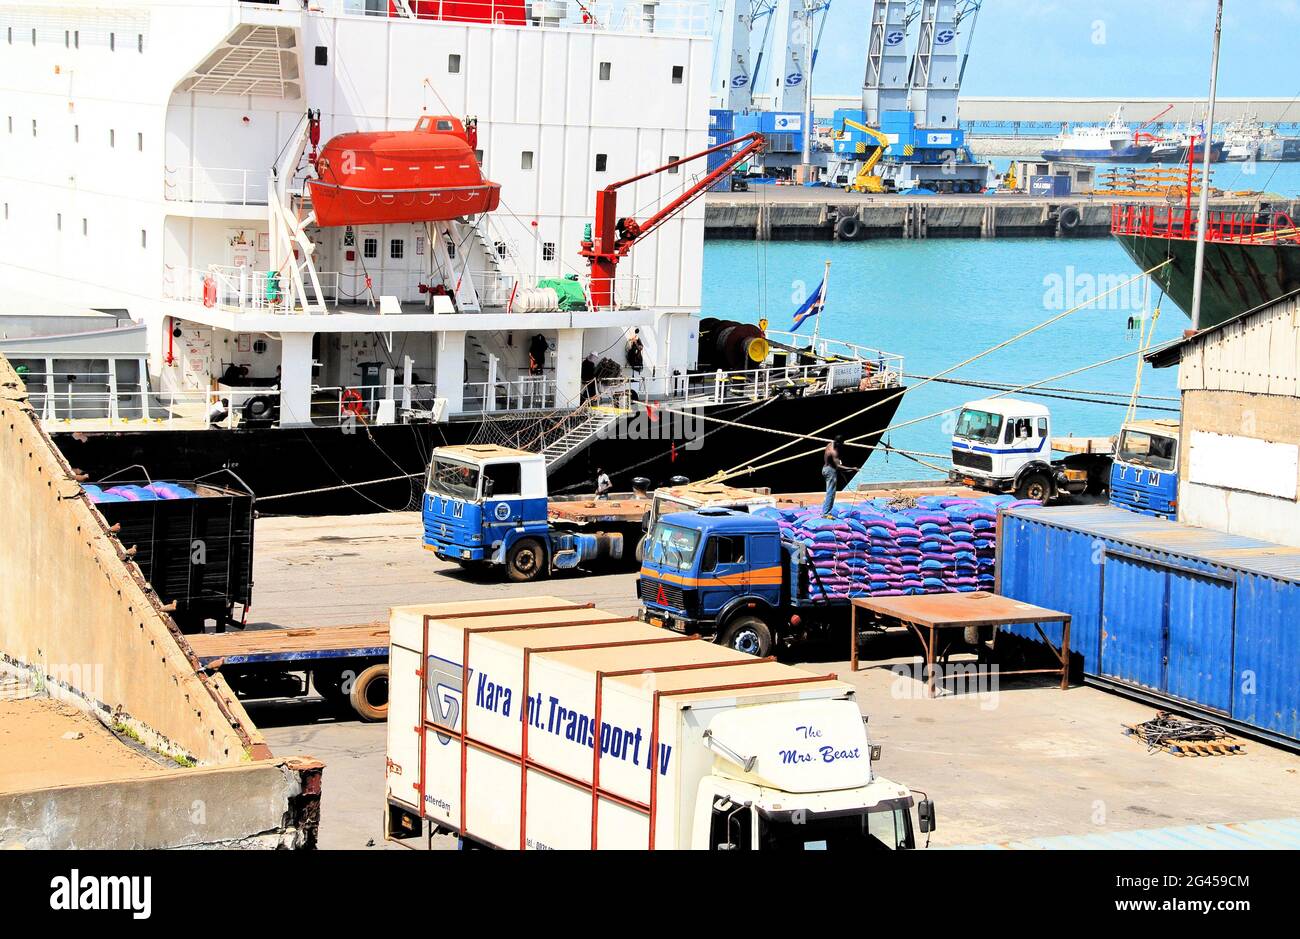 Descargando un barco en el Puerto de Lomé, Togo, mientras un hombre carga un camión con sacos de mercancías recién llegadas y otros camiones esperan su turno. Foto de stock